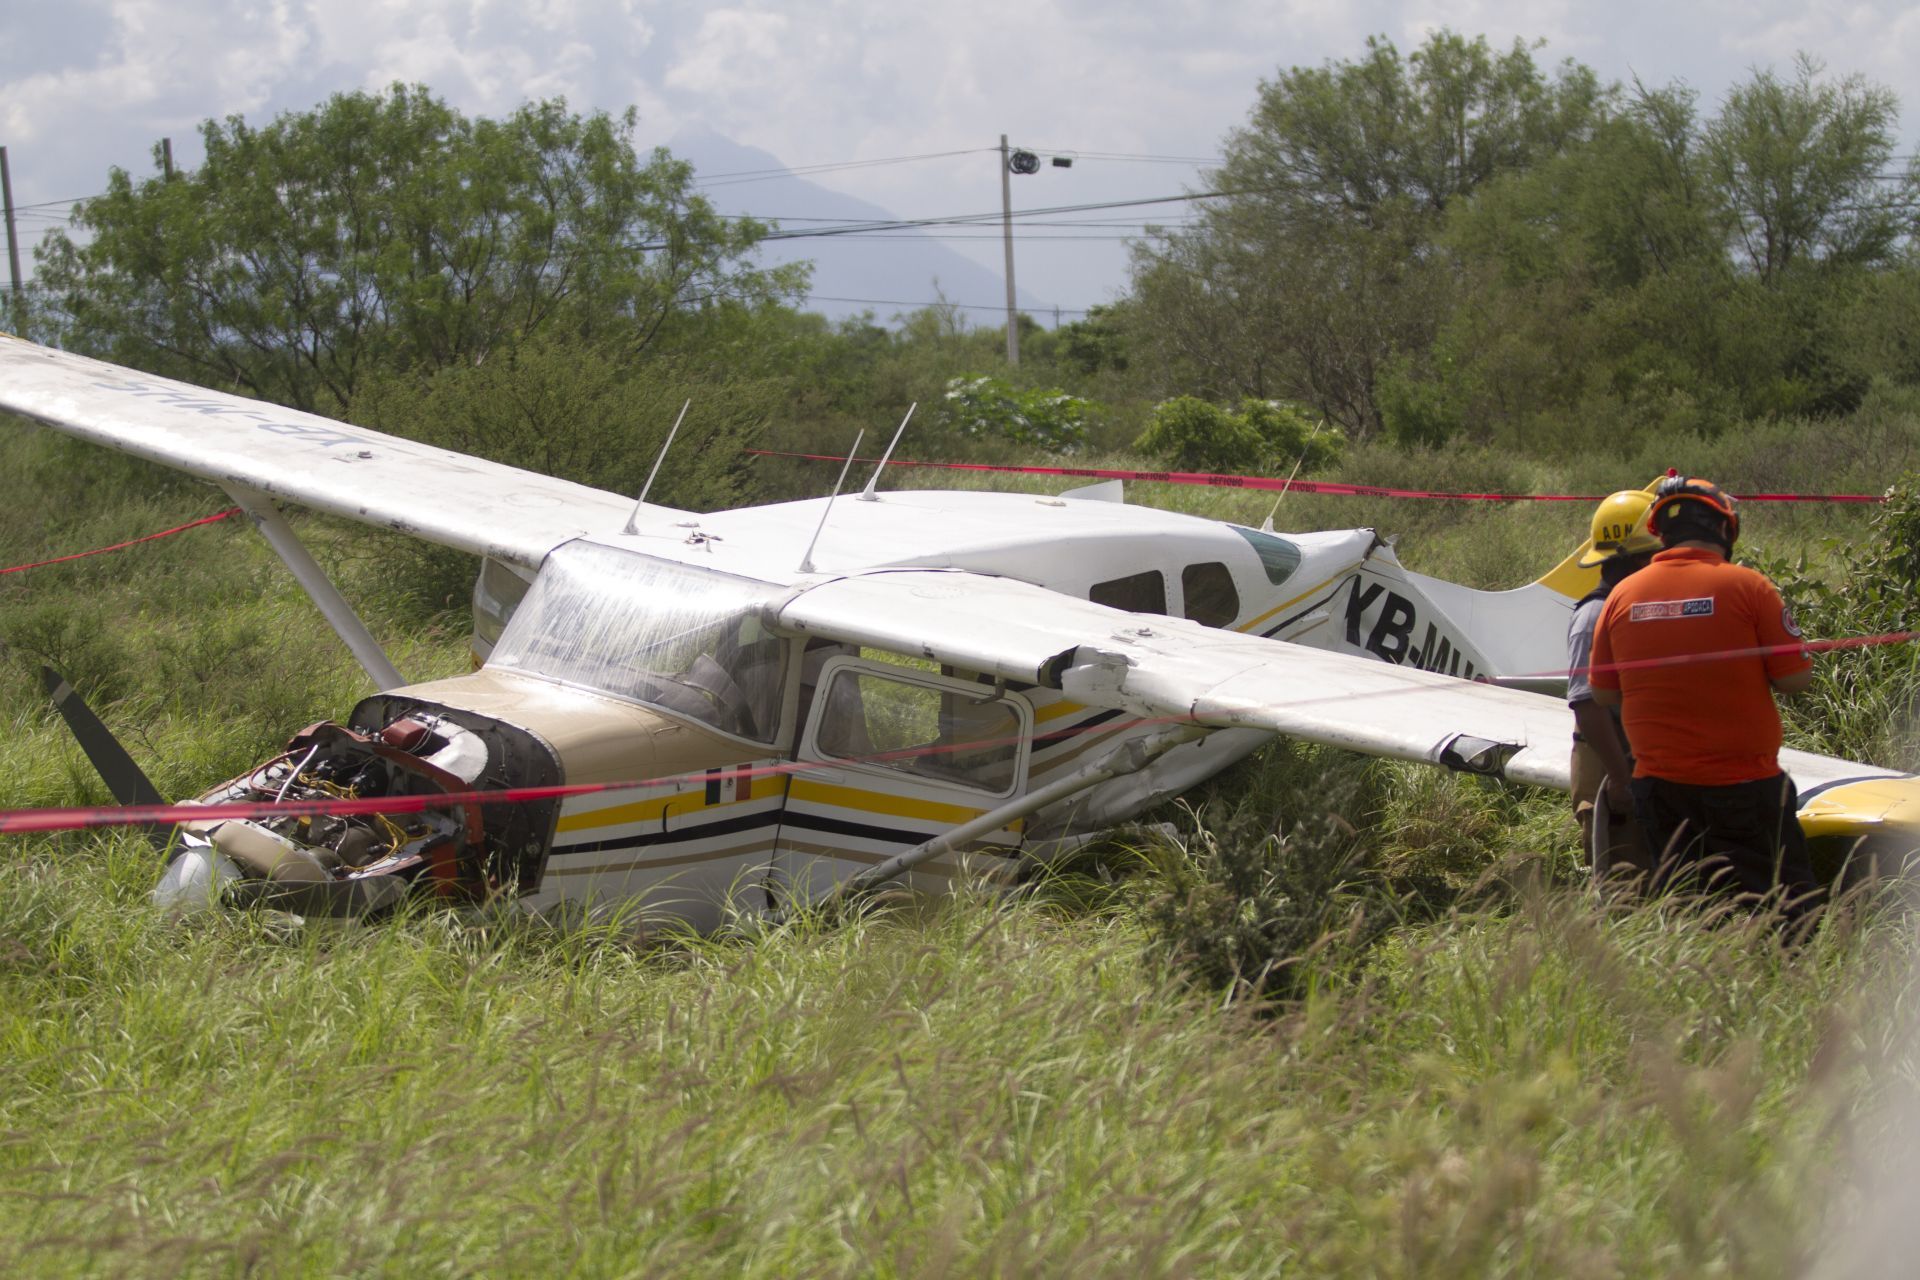 Se desploma avioneta donde viajaba un funcionario de Sonora; hay cuatro muertos